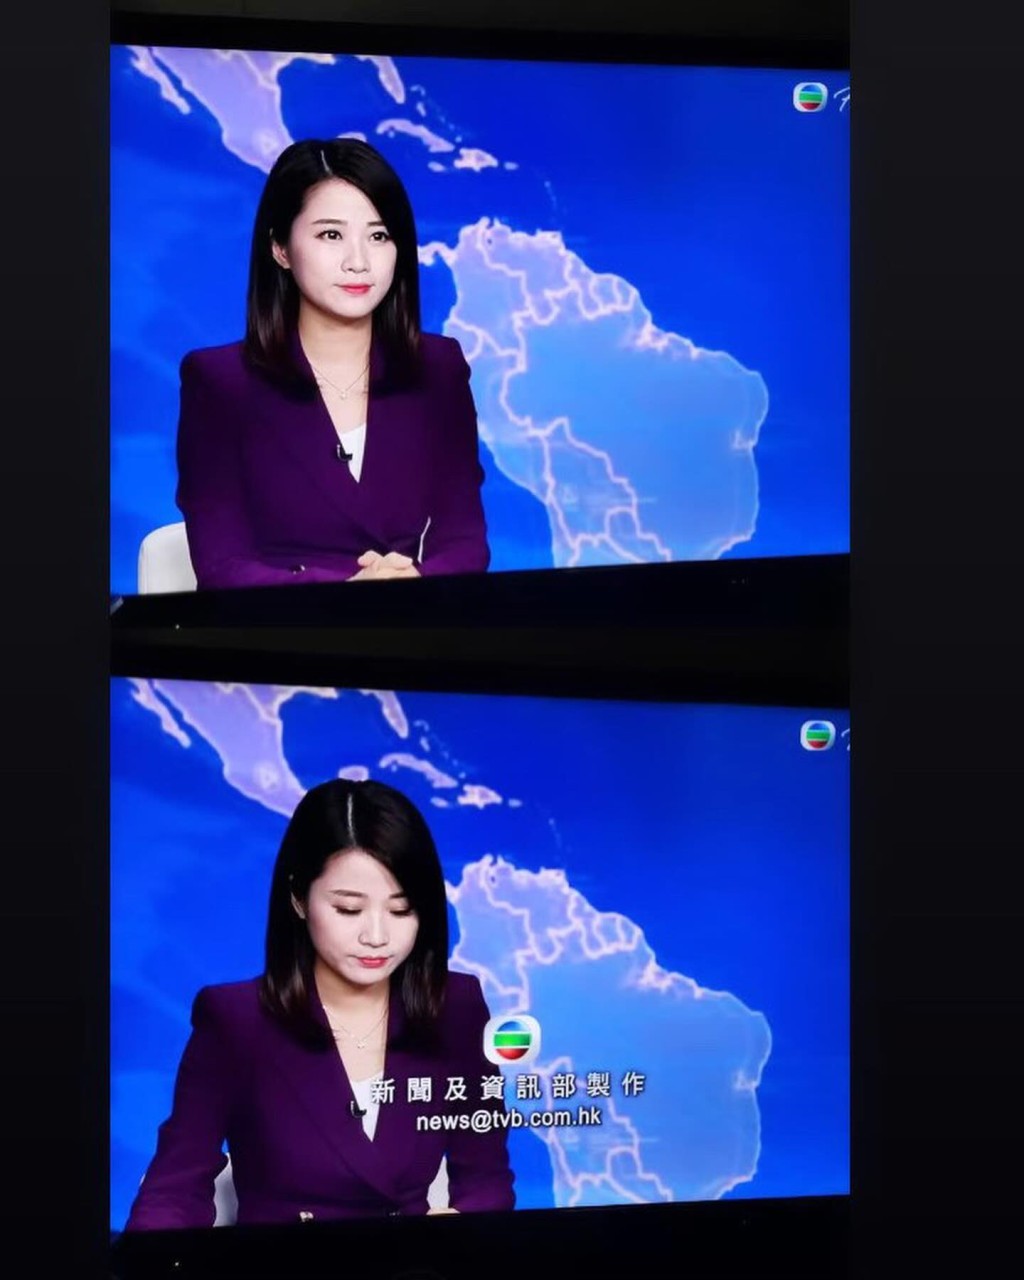 溫蕎菲曾任TVB主播。